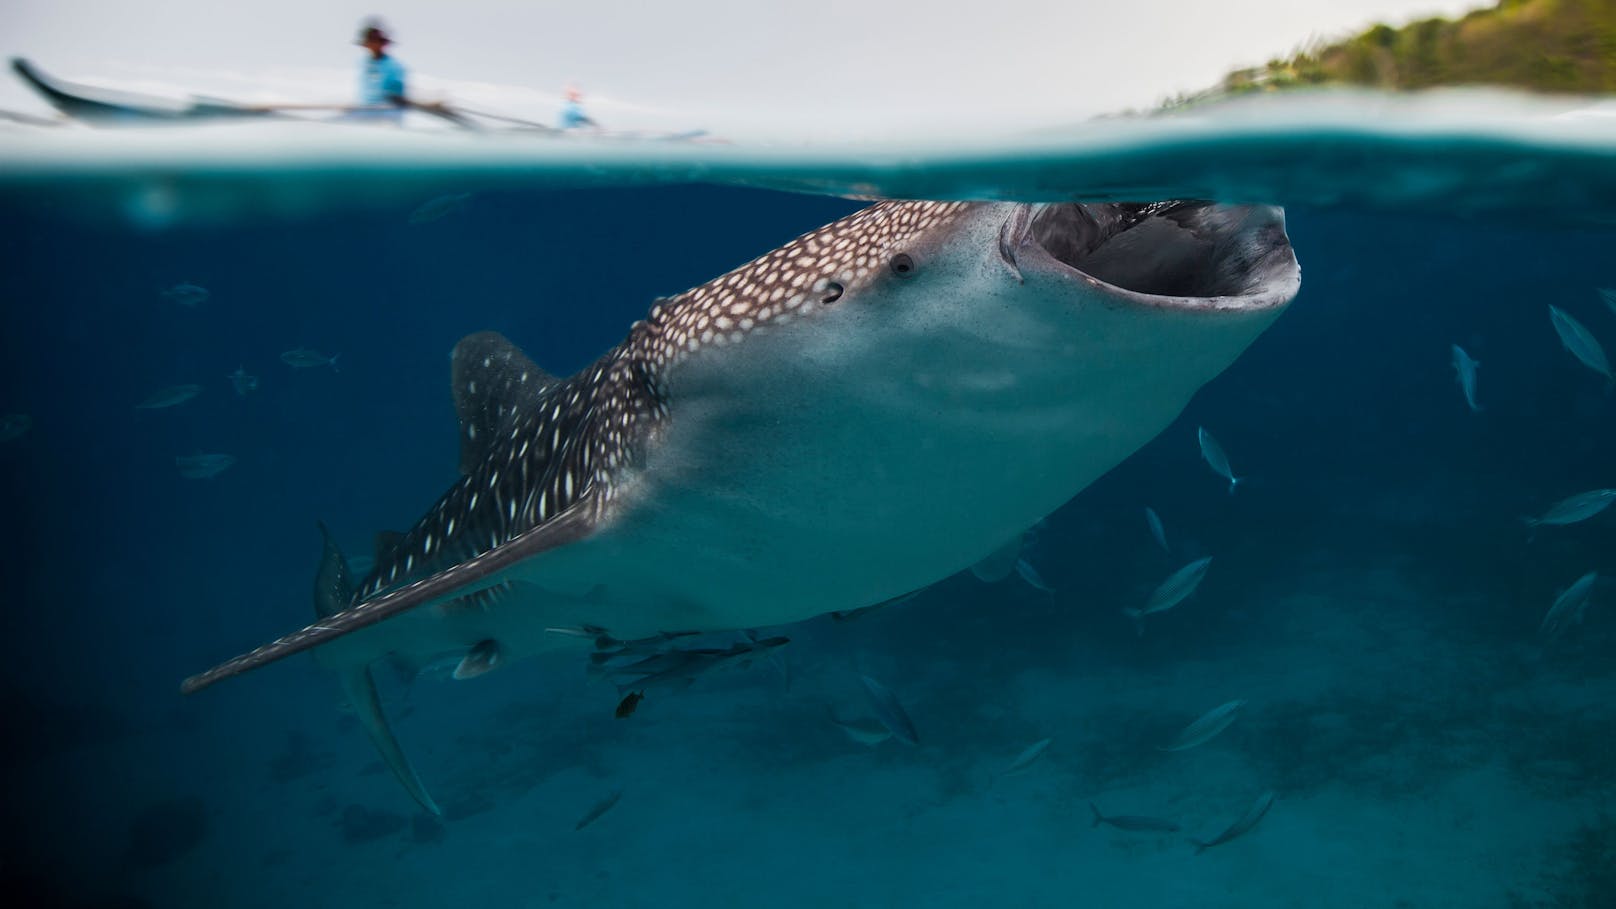 Das Foto des Walhais wurde seit 2015 mehrfach ausgezeichnet